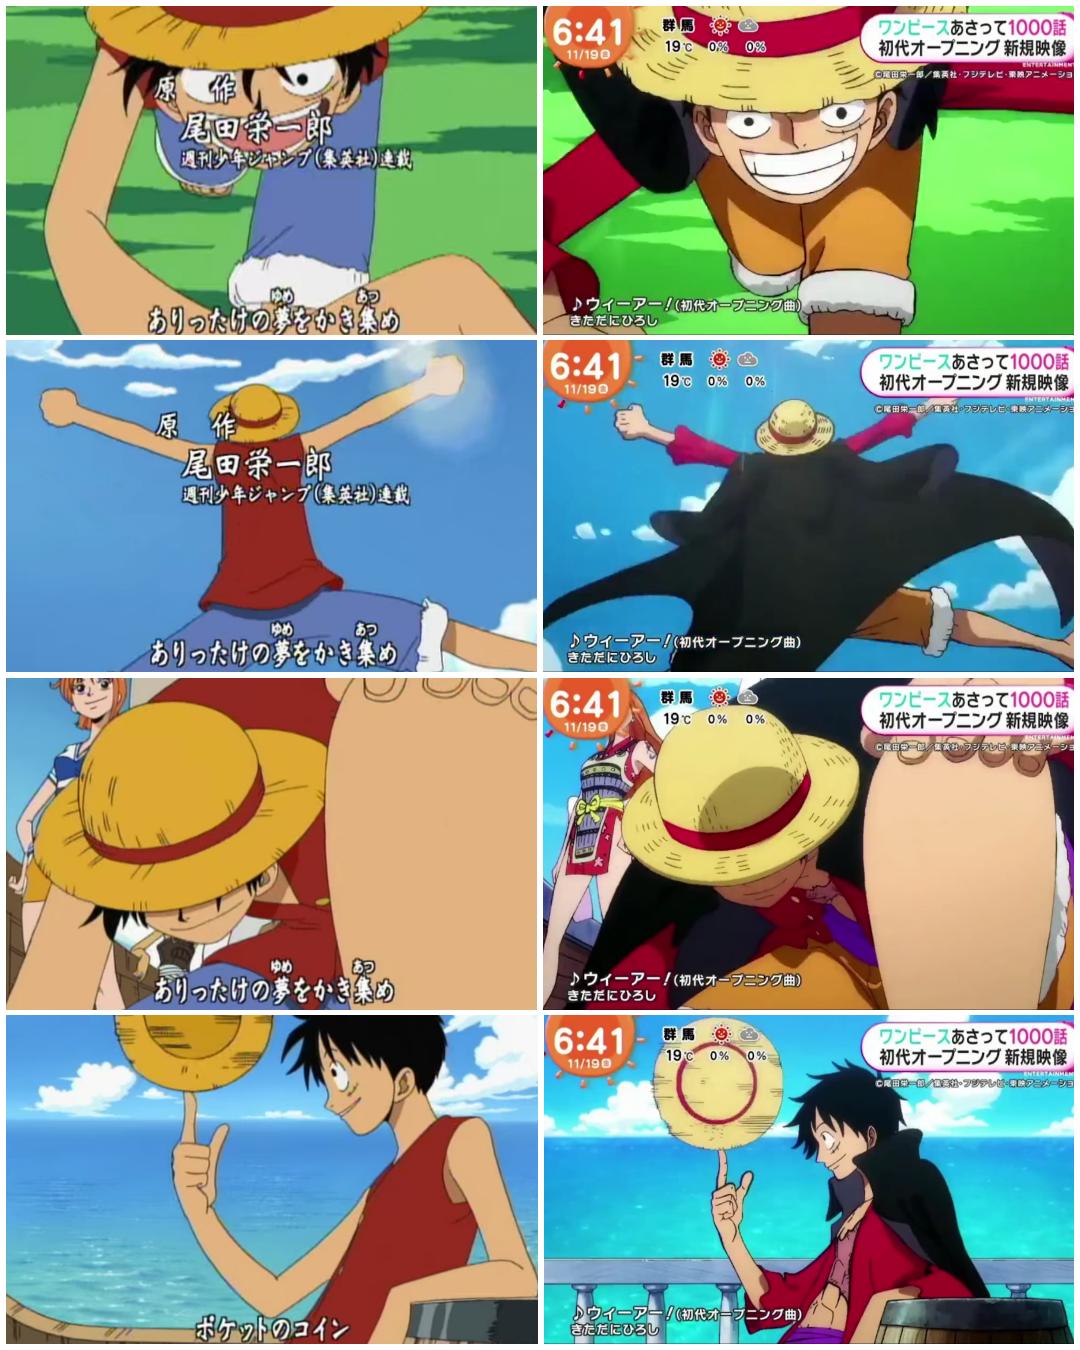 One Piece 第1000話のオープニング曲は 初代の ウィーアー 話題の画像プラス